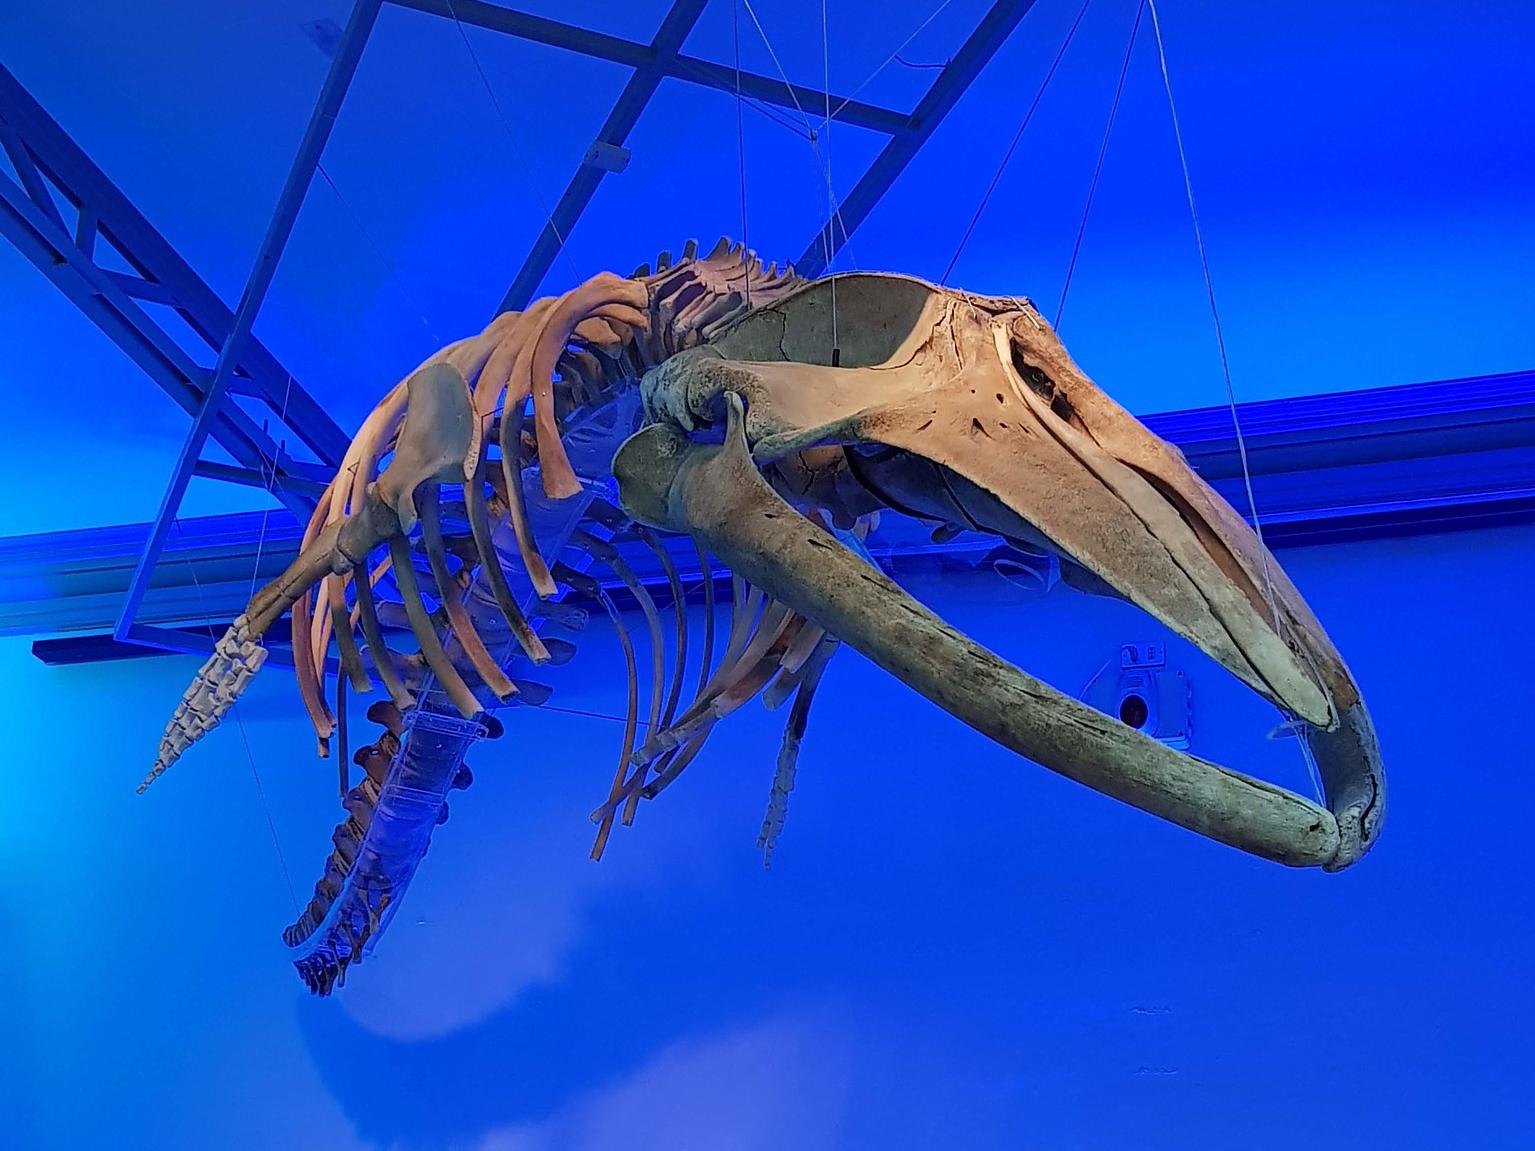 Esqueleto completo de una ballena expuesta en el museo, esta se encuentra delante de un fondo azul asemejando al océano. 